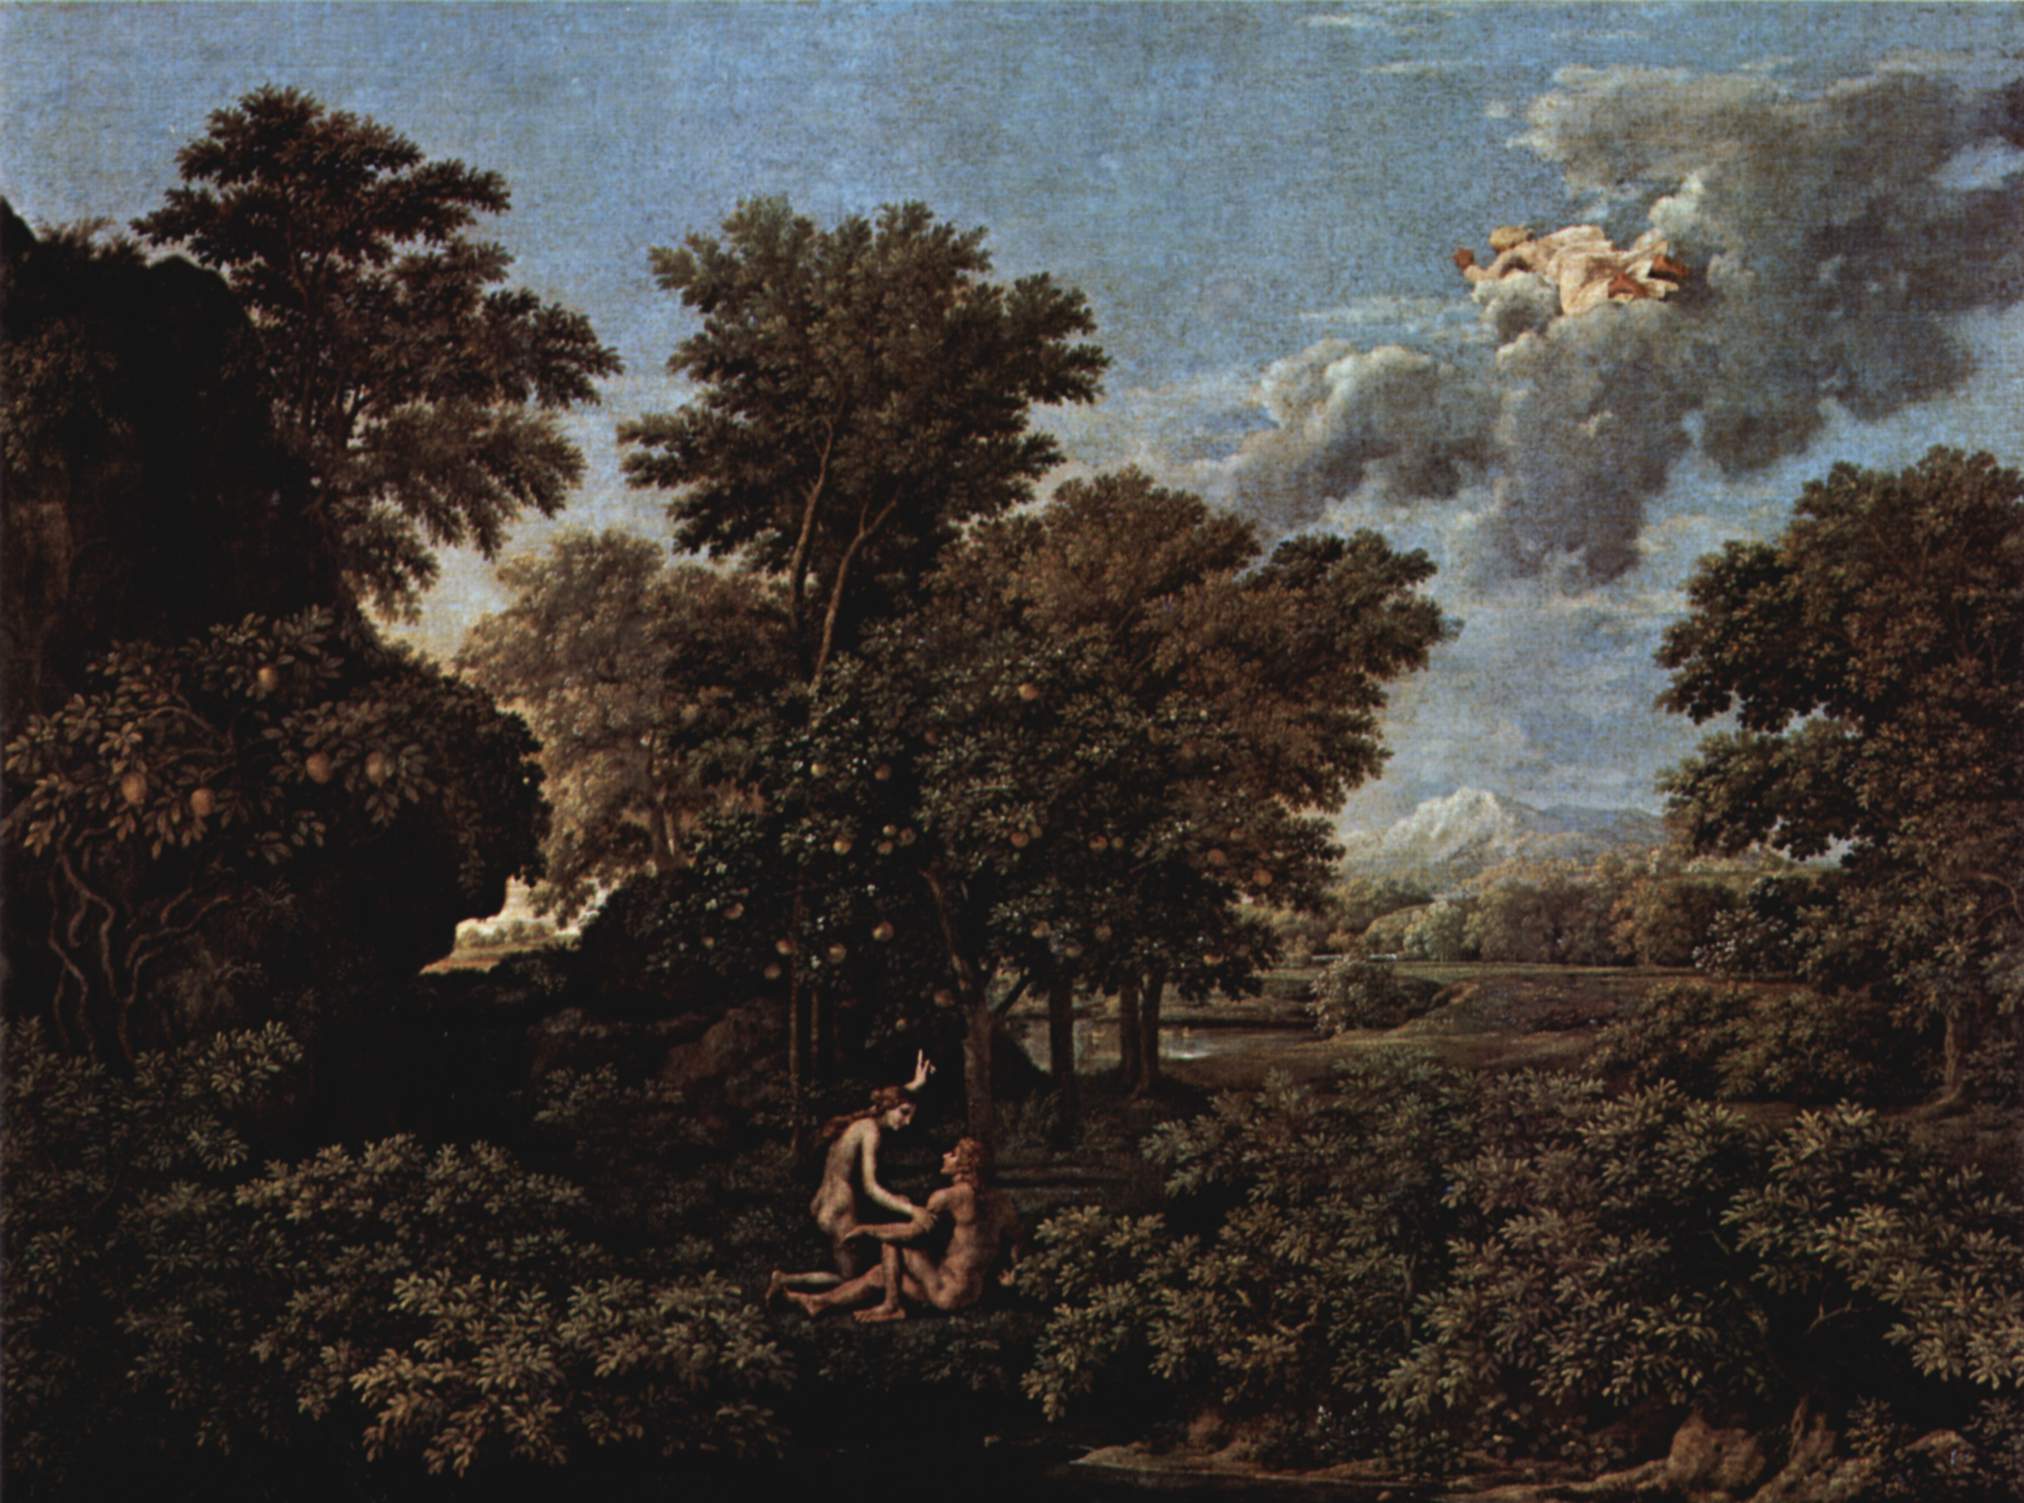 Frühling (Paradies auf Erden) by Nicolas Poussin - 1664 - 117 x 160 cm Musée du Louvre